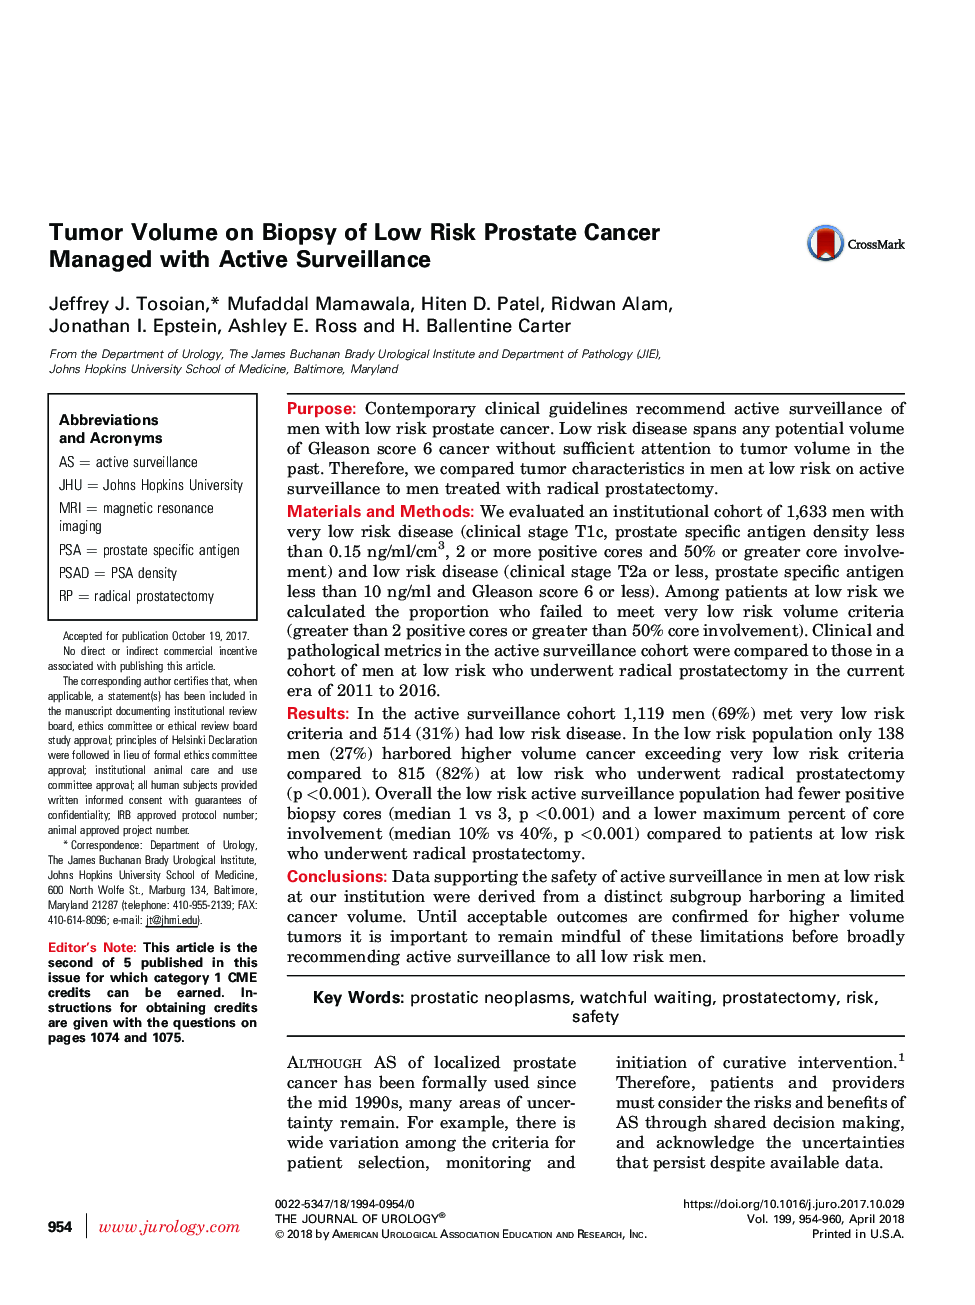 حجم تومور در بیوپسی سرطان پروستات کم خطر مدیریت شده با نظارت فعال است 